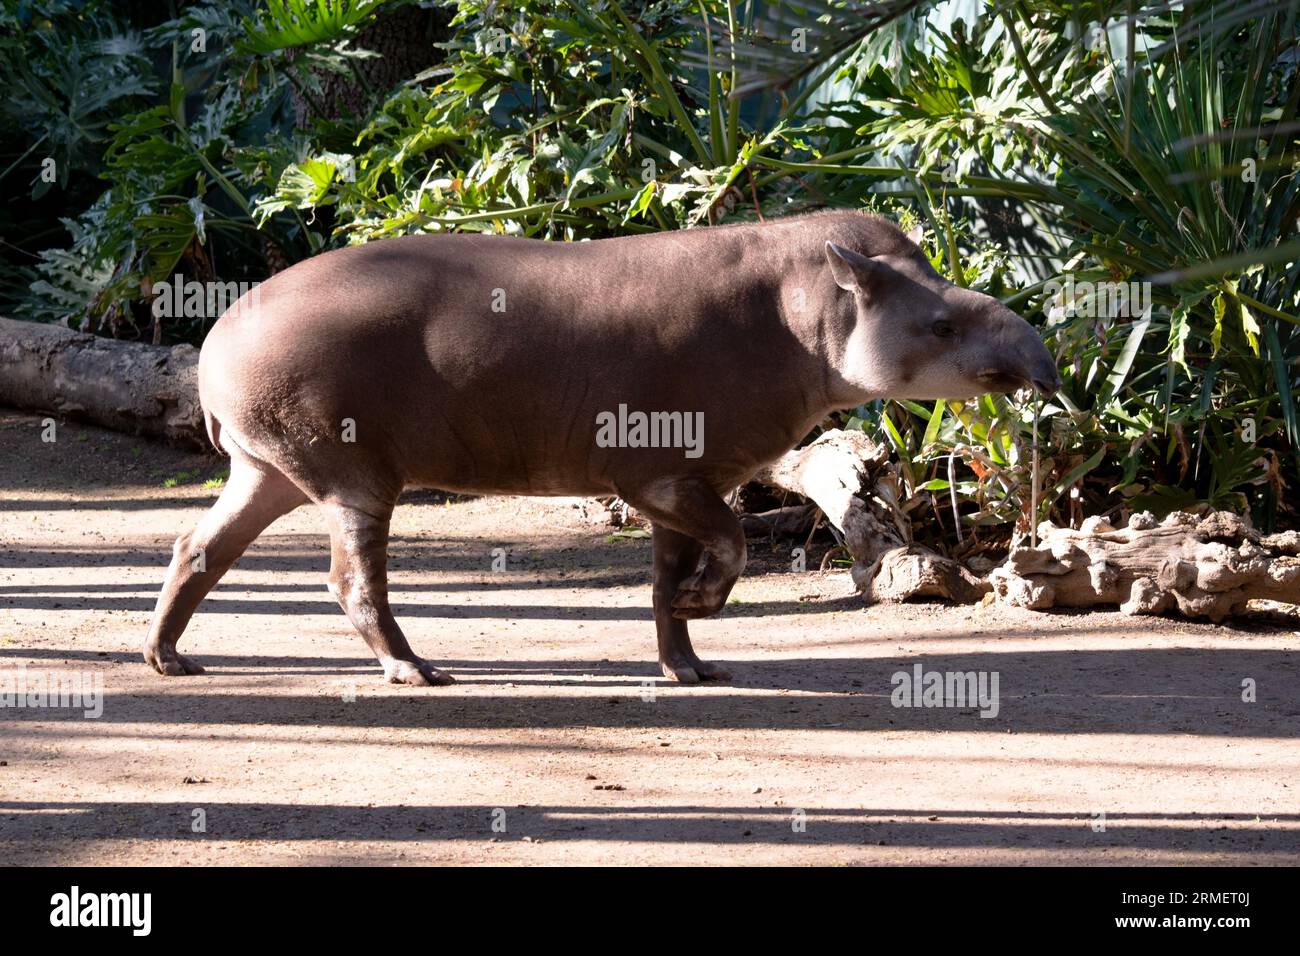 Die lange, flexible Schnauze des Tapirs wird aus Oberlippe und Nase gebildet. Verwenden Sie diese Option, um Lebensmittel nach Geruch zu finden. Stockfoto